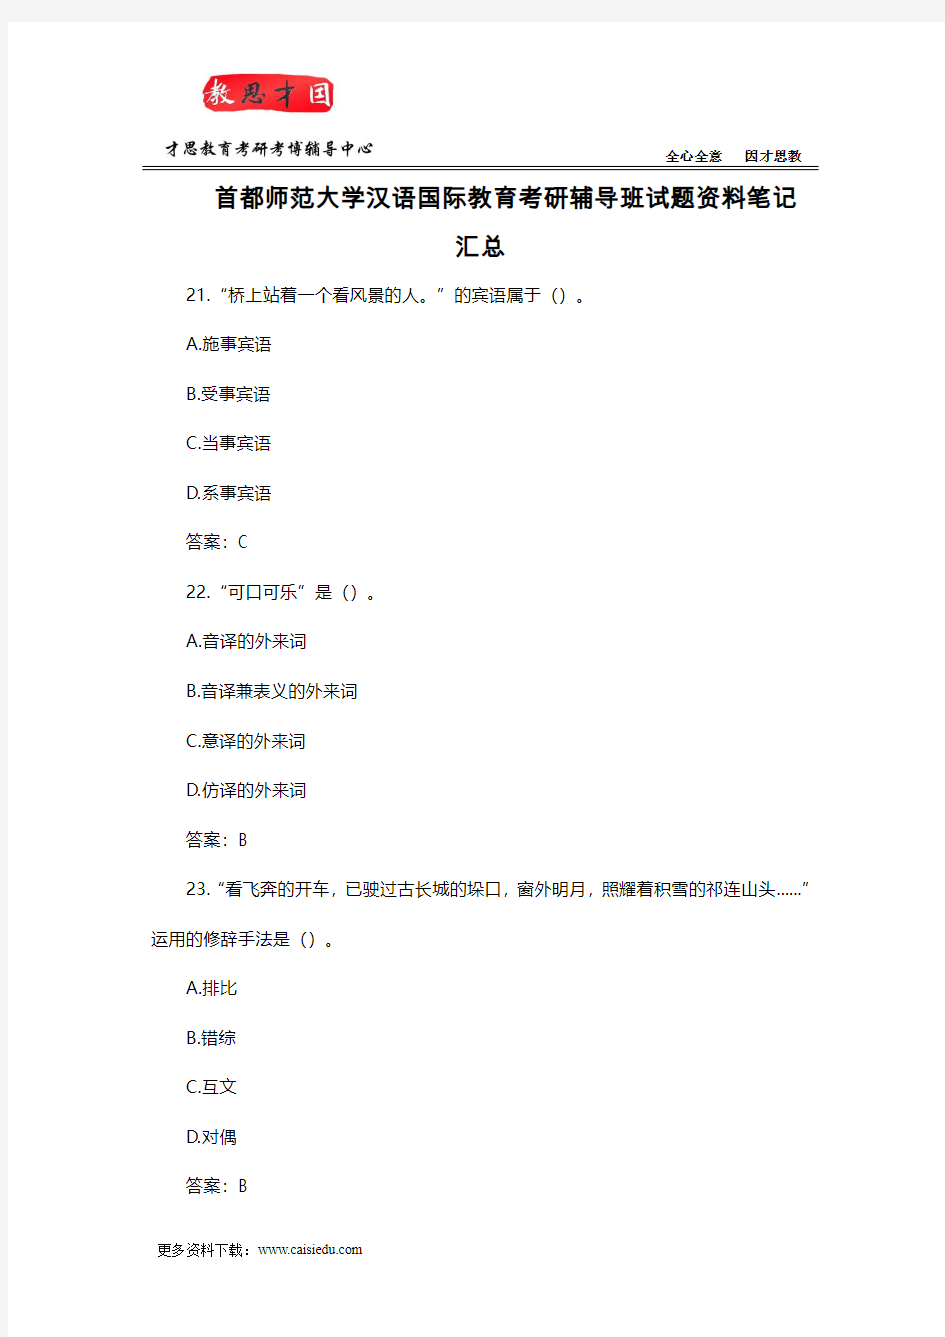 首都师范大学汉语国际教育考研辅导班试题资料笔记汇总